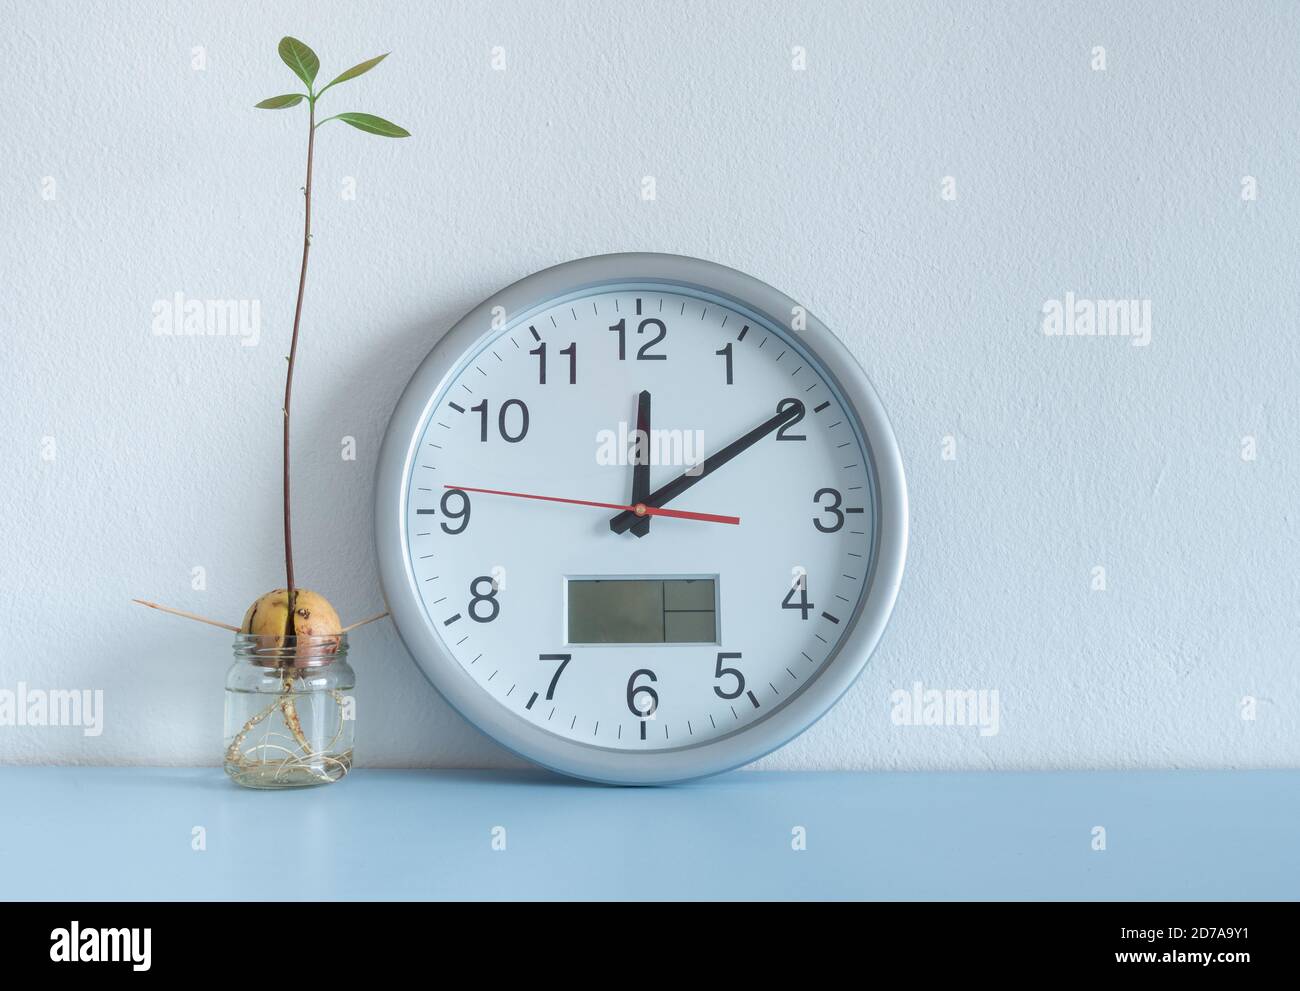 Bild zeigt Uhr und Avocado Samen/Stein wachsen in Wasser auf Home Regal. Stockfoto